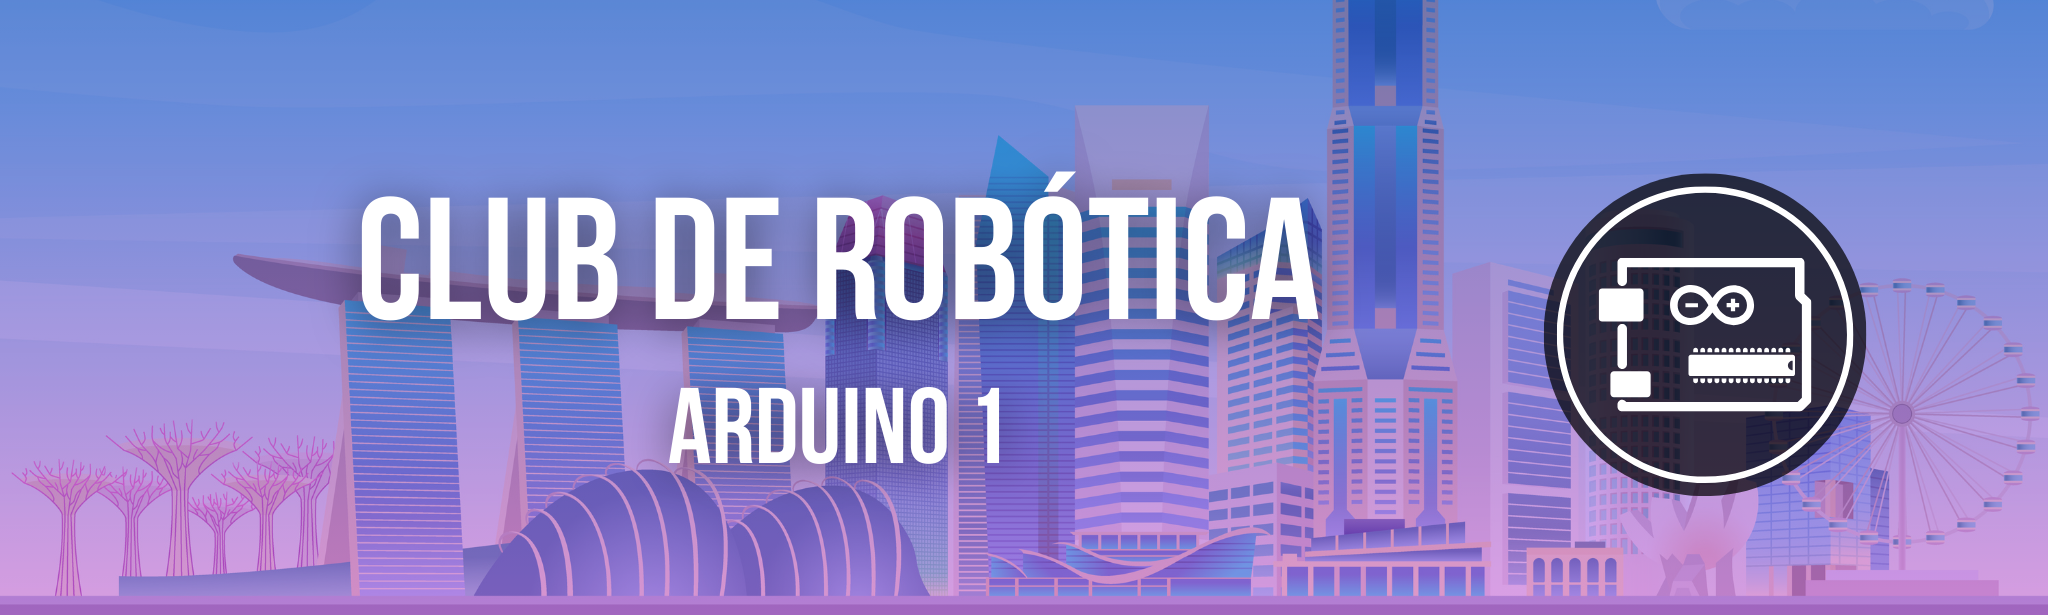 Club de Robótica para chicas - Arduino (10)